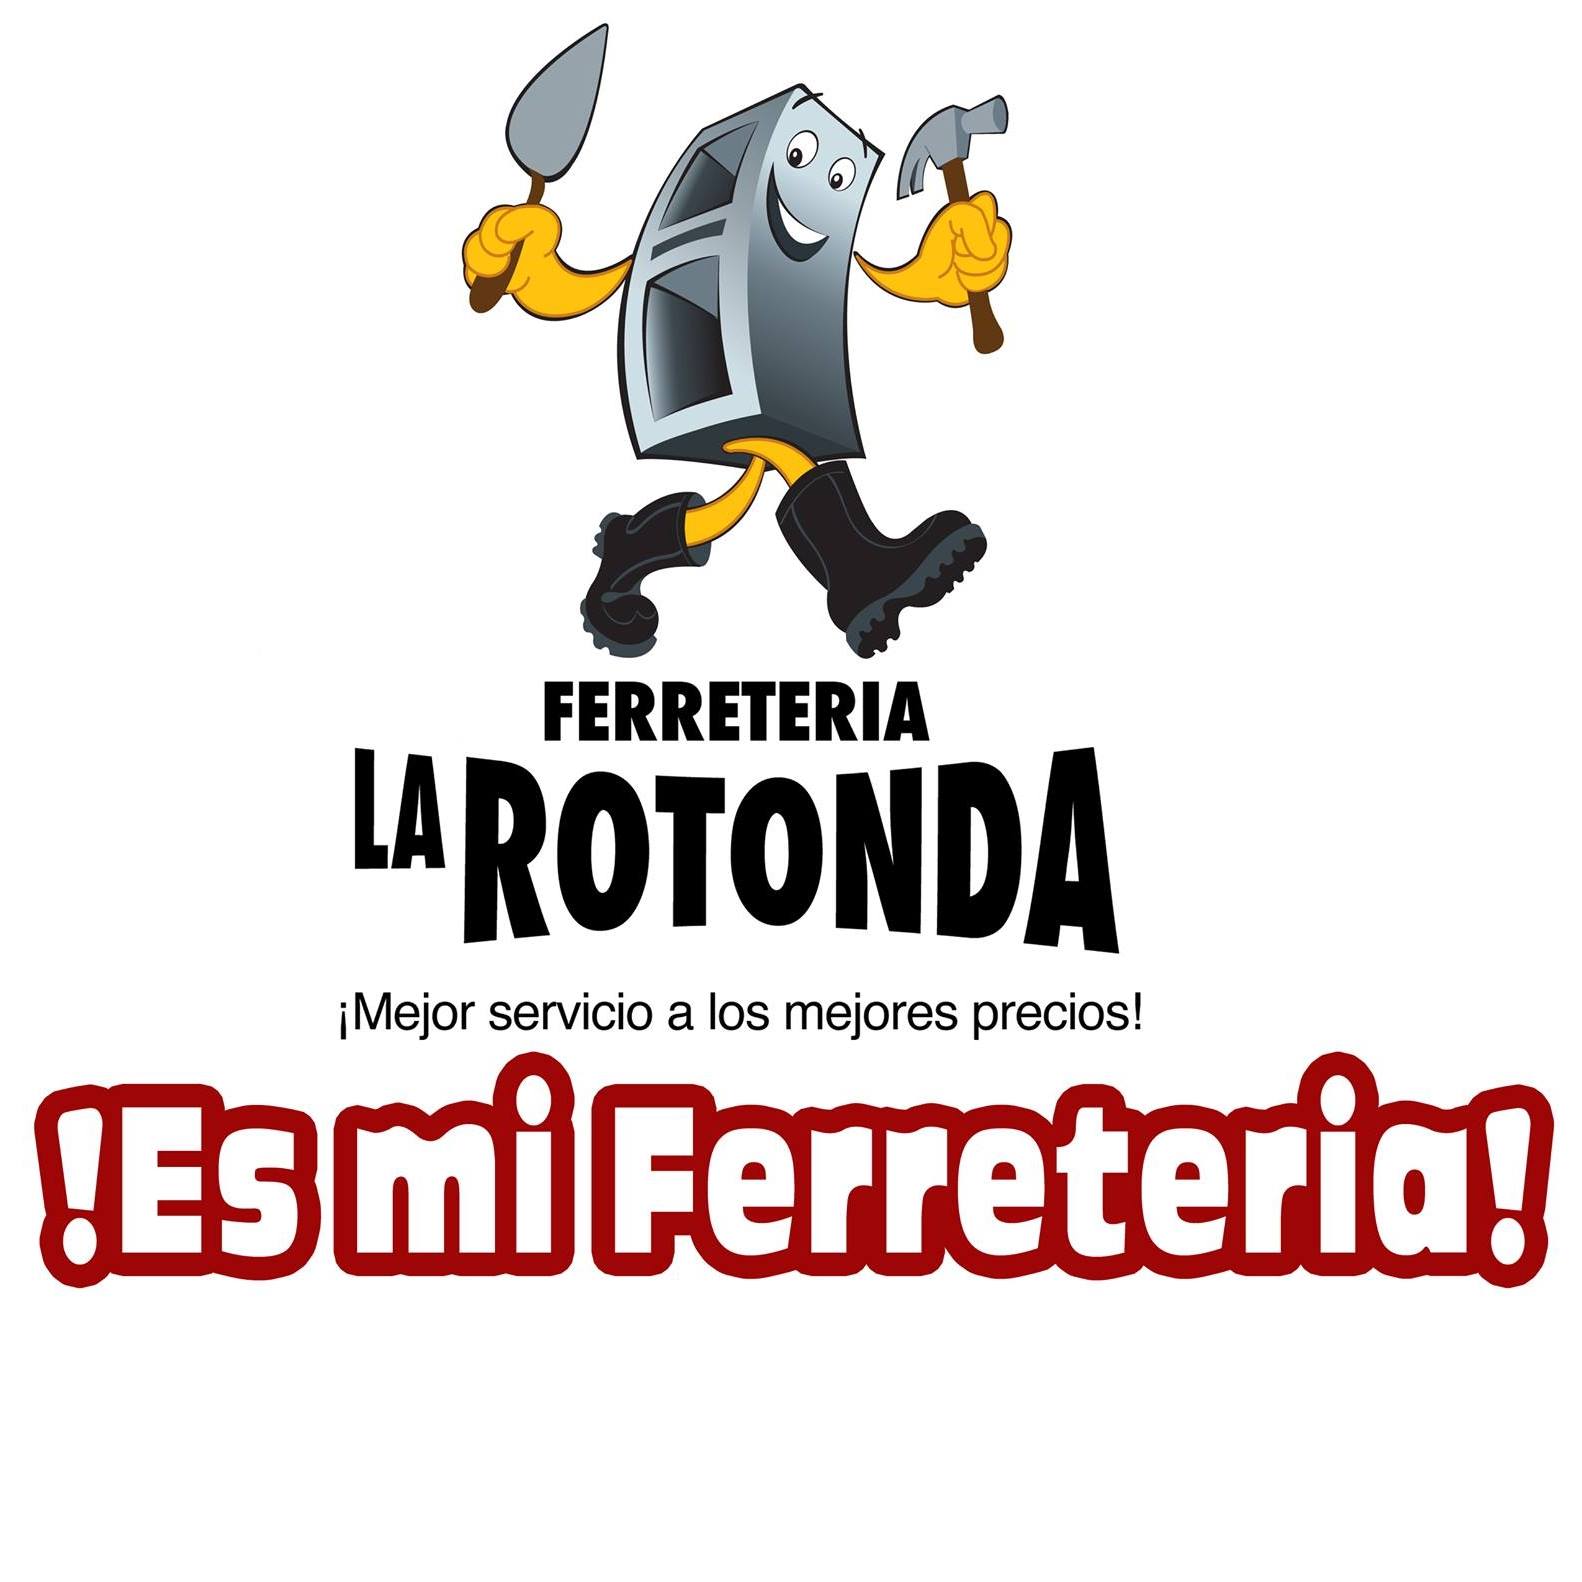 LA ROTONDA FERRETERIA